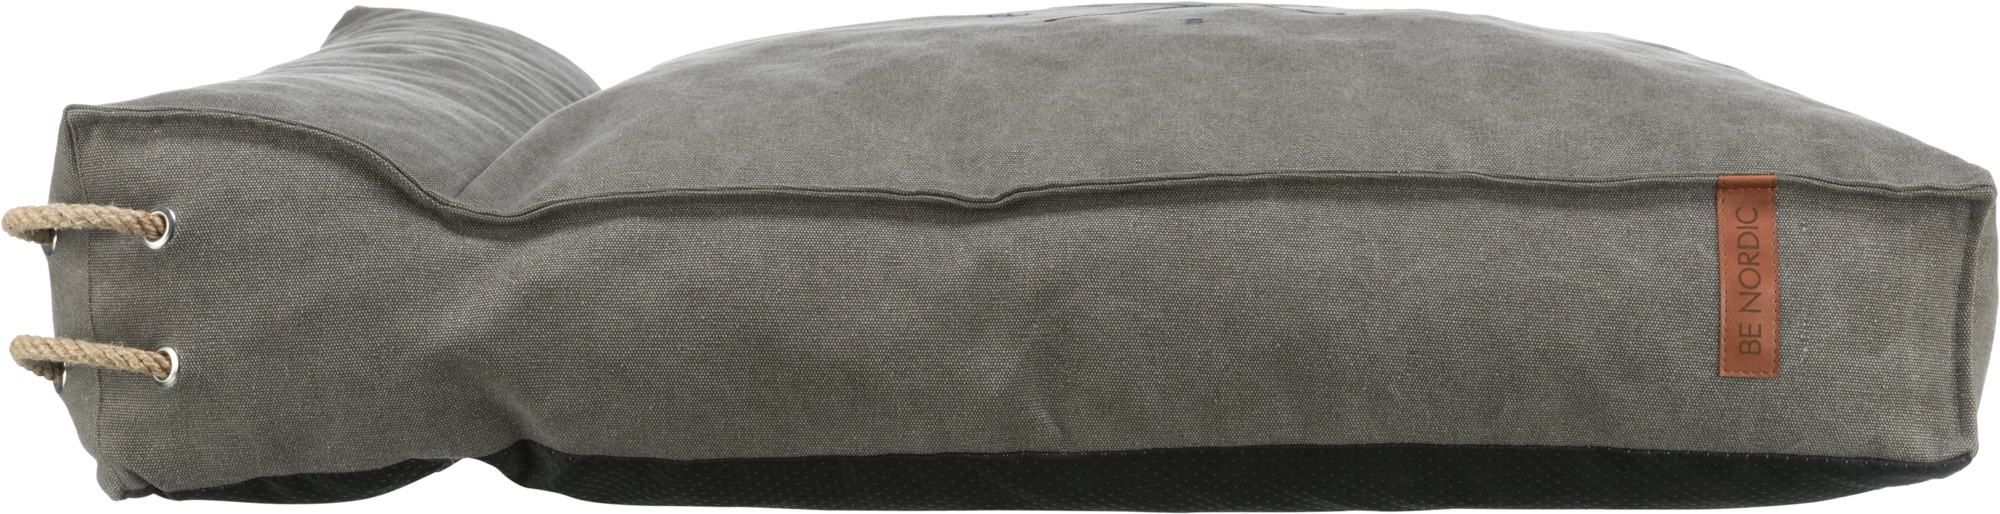 Colchón con borde Trixie BE NORDIC Föhr gris oscuro - disponible en varios tamaños